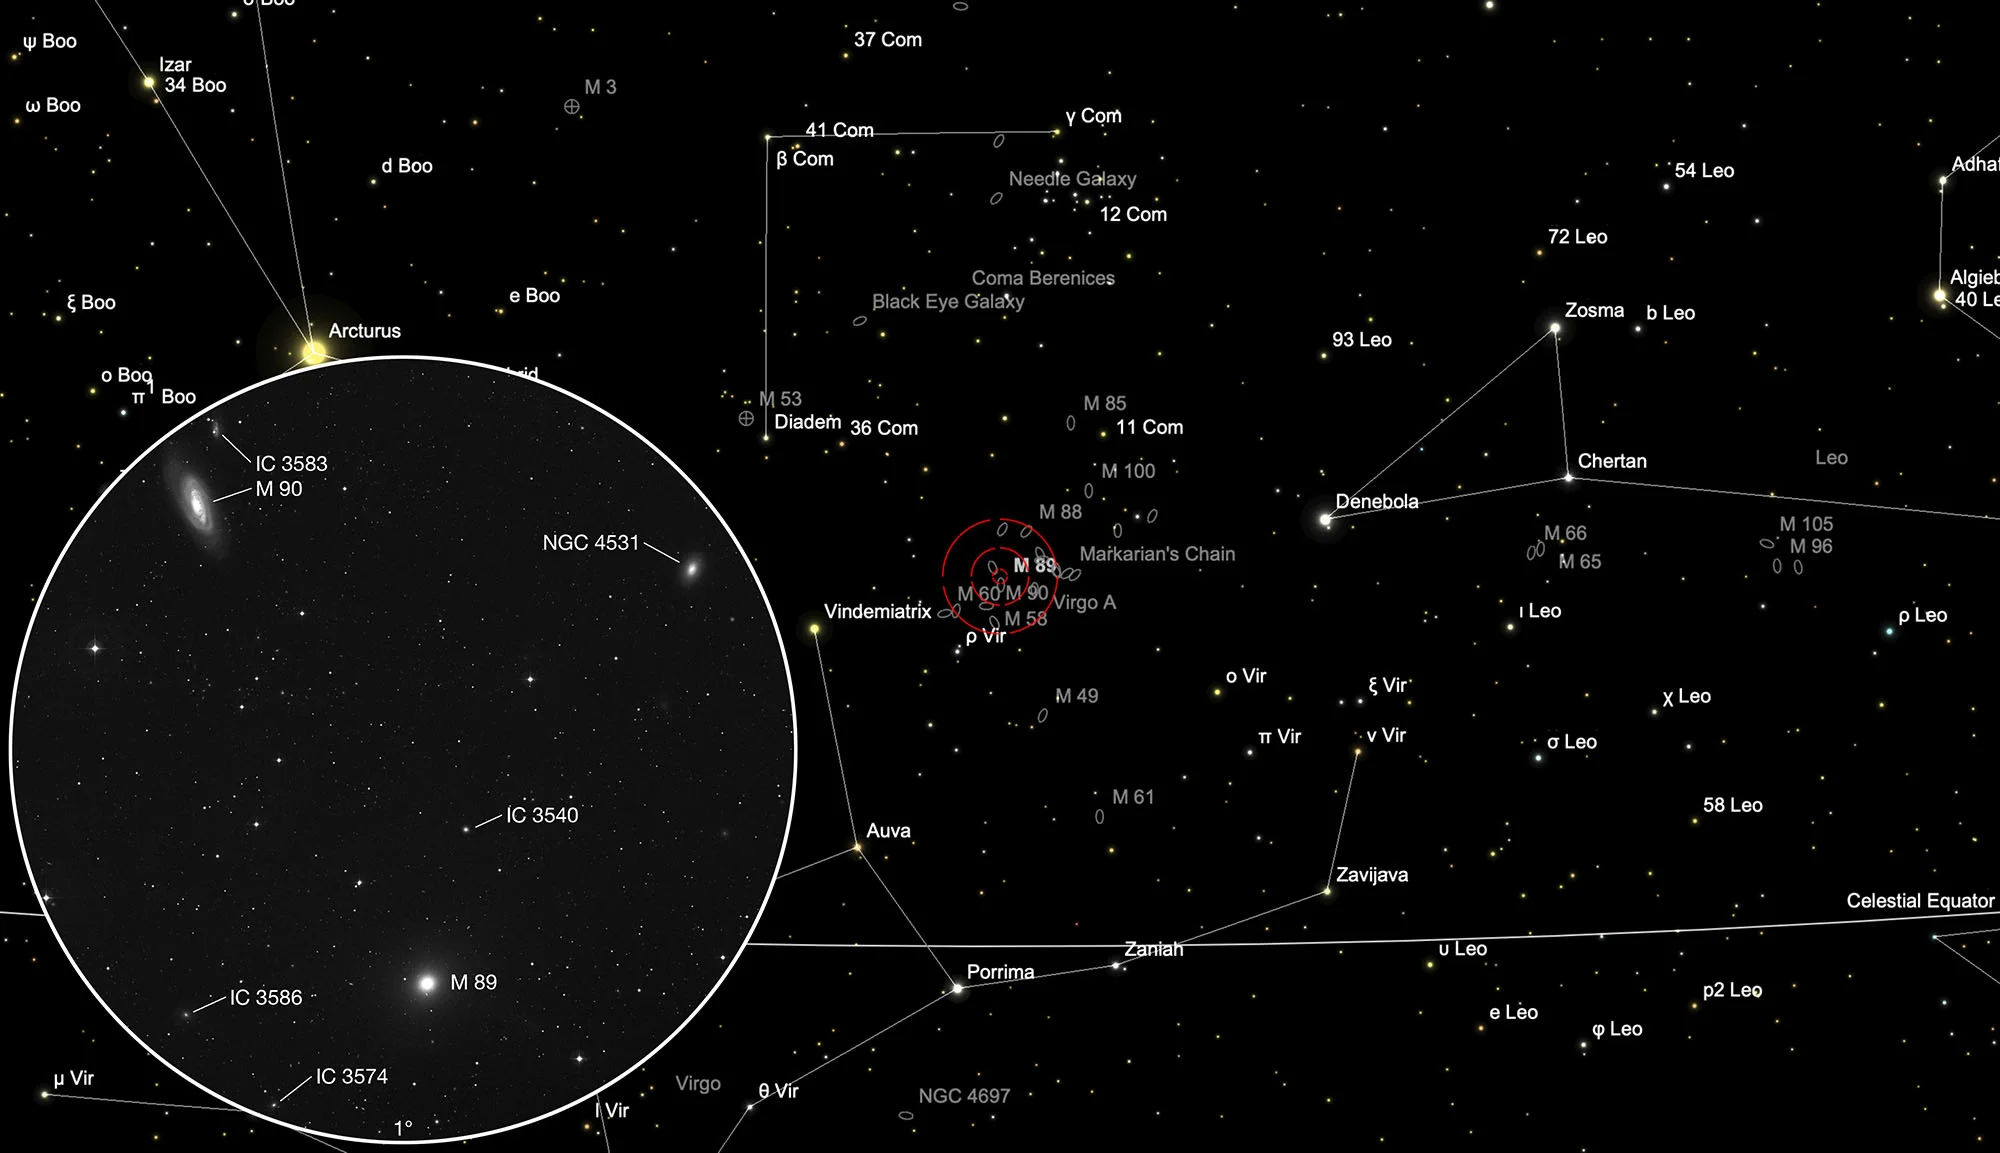 Auffindkarte Galaxien Messier 89 & Messier 90